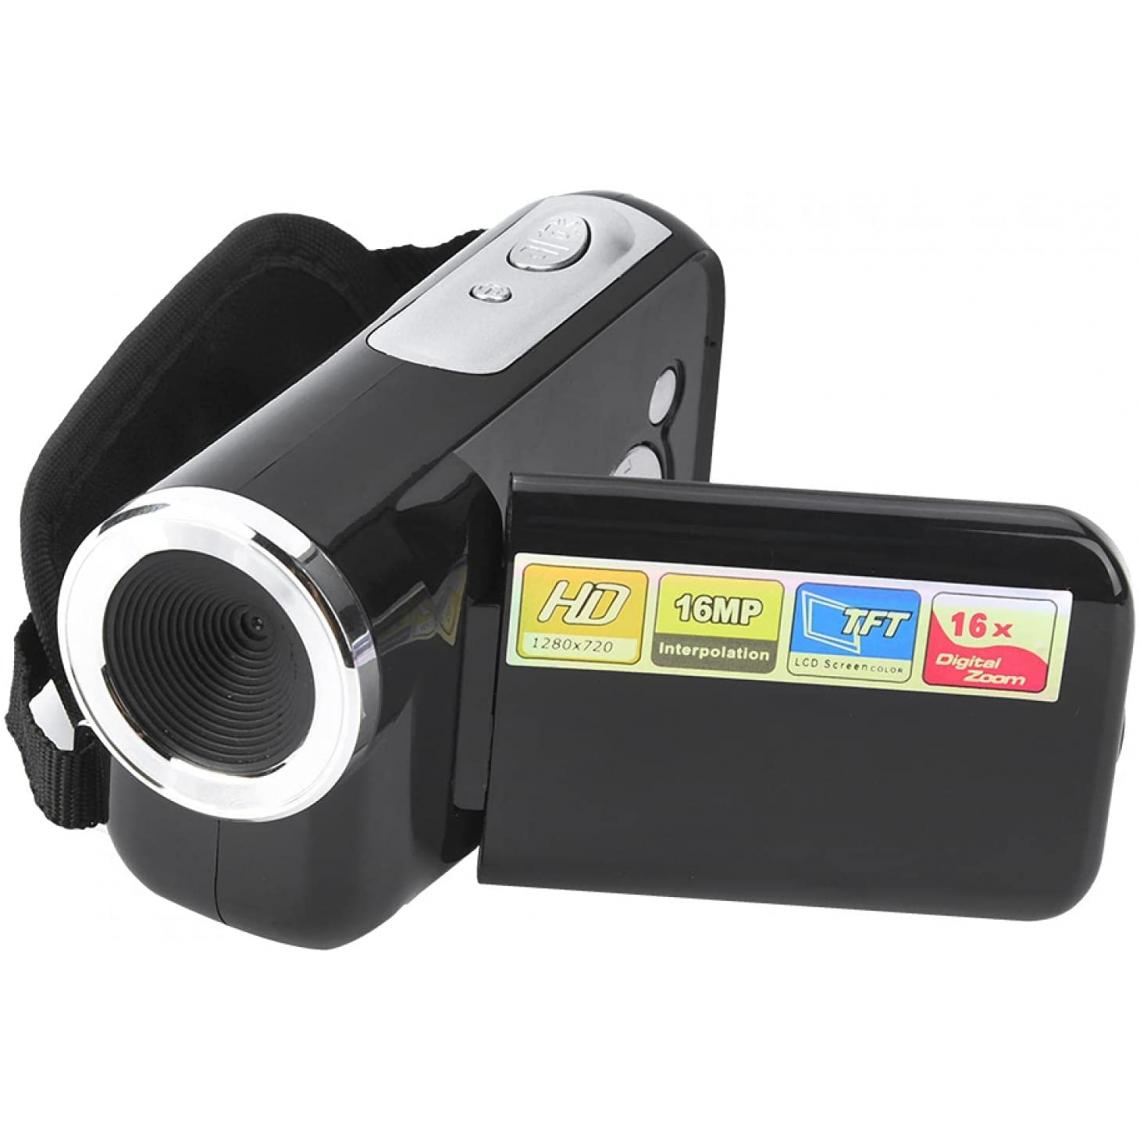 Vendos85 - Caméscope numérique TFT LCD de 2 pouces 1080 X 720 noir - Caméras Sportives